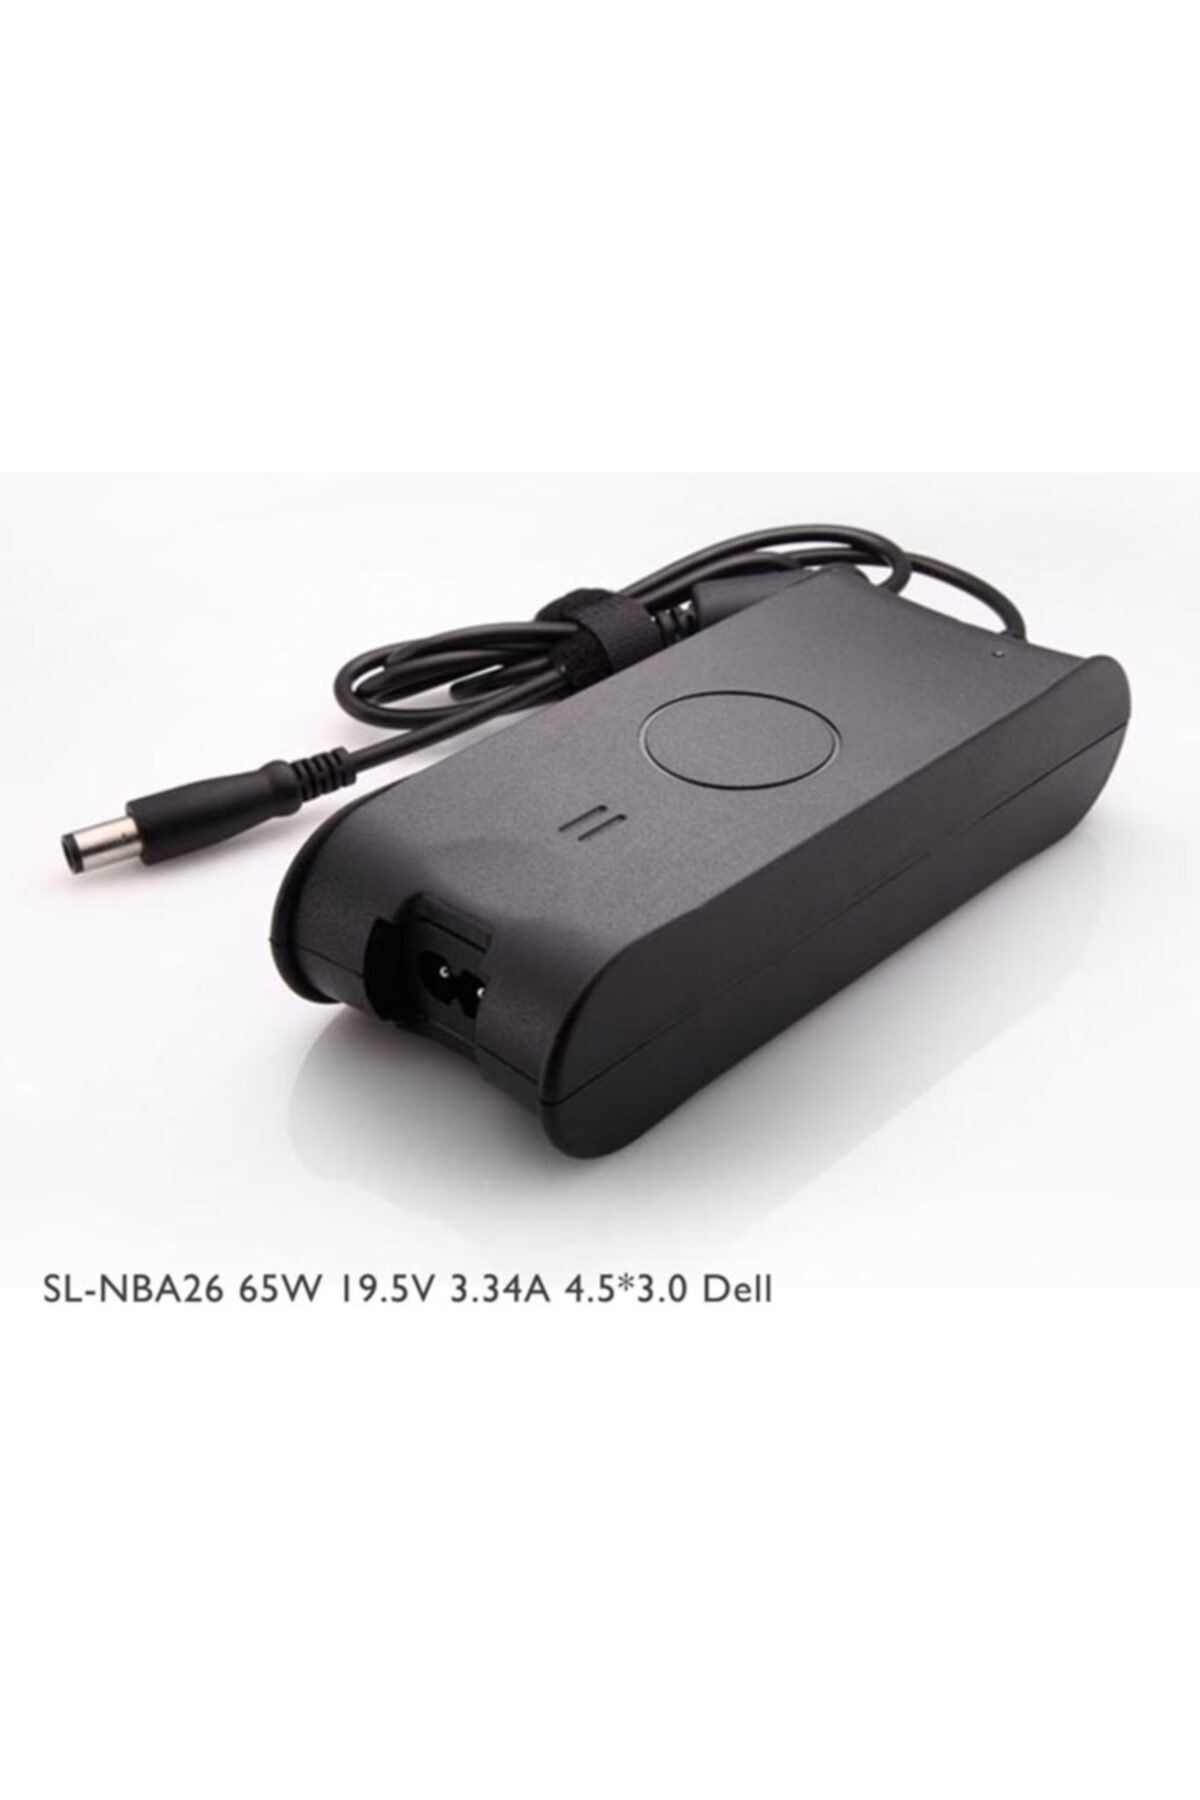 S-Link Sl-nba26 65w 19.5v 3.34a 4.5-3.0 Notebook Adaptörü